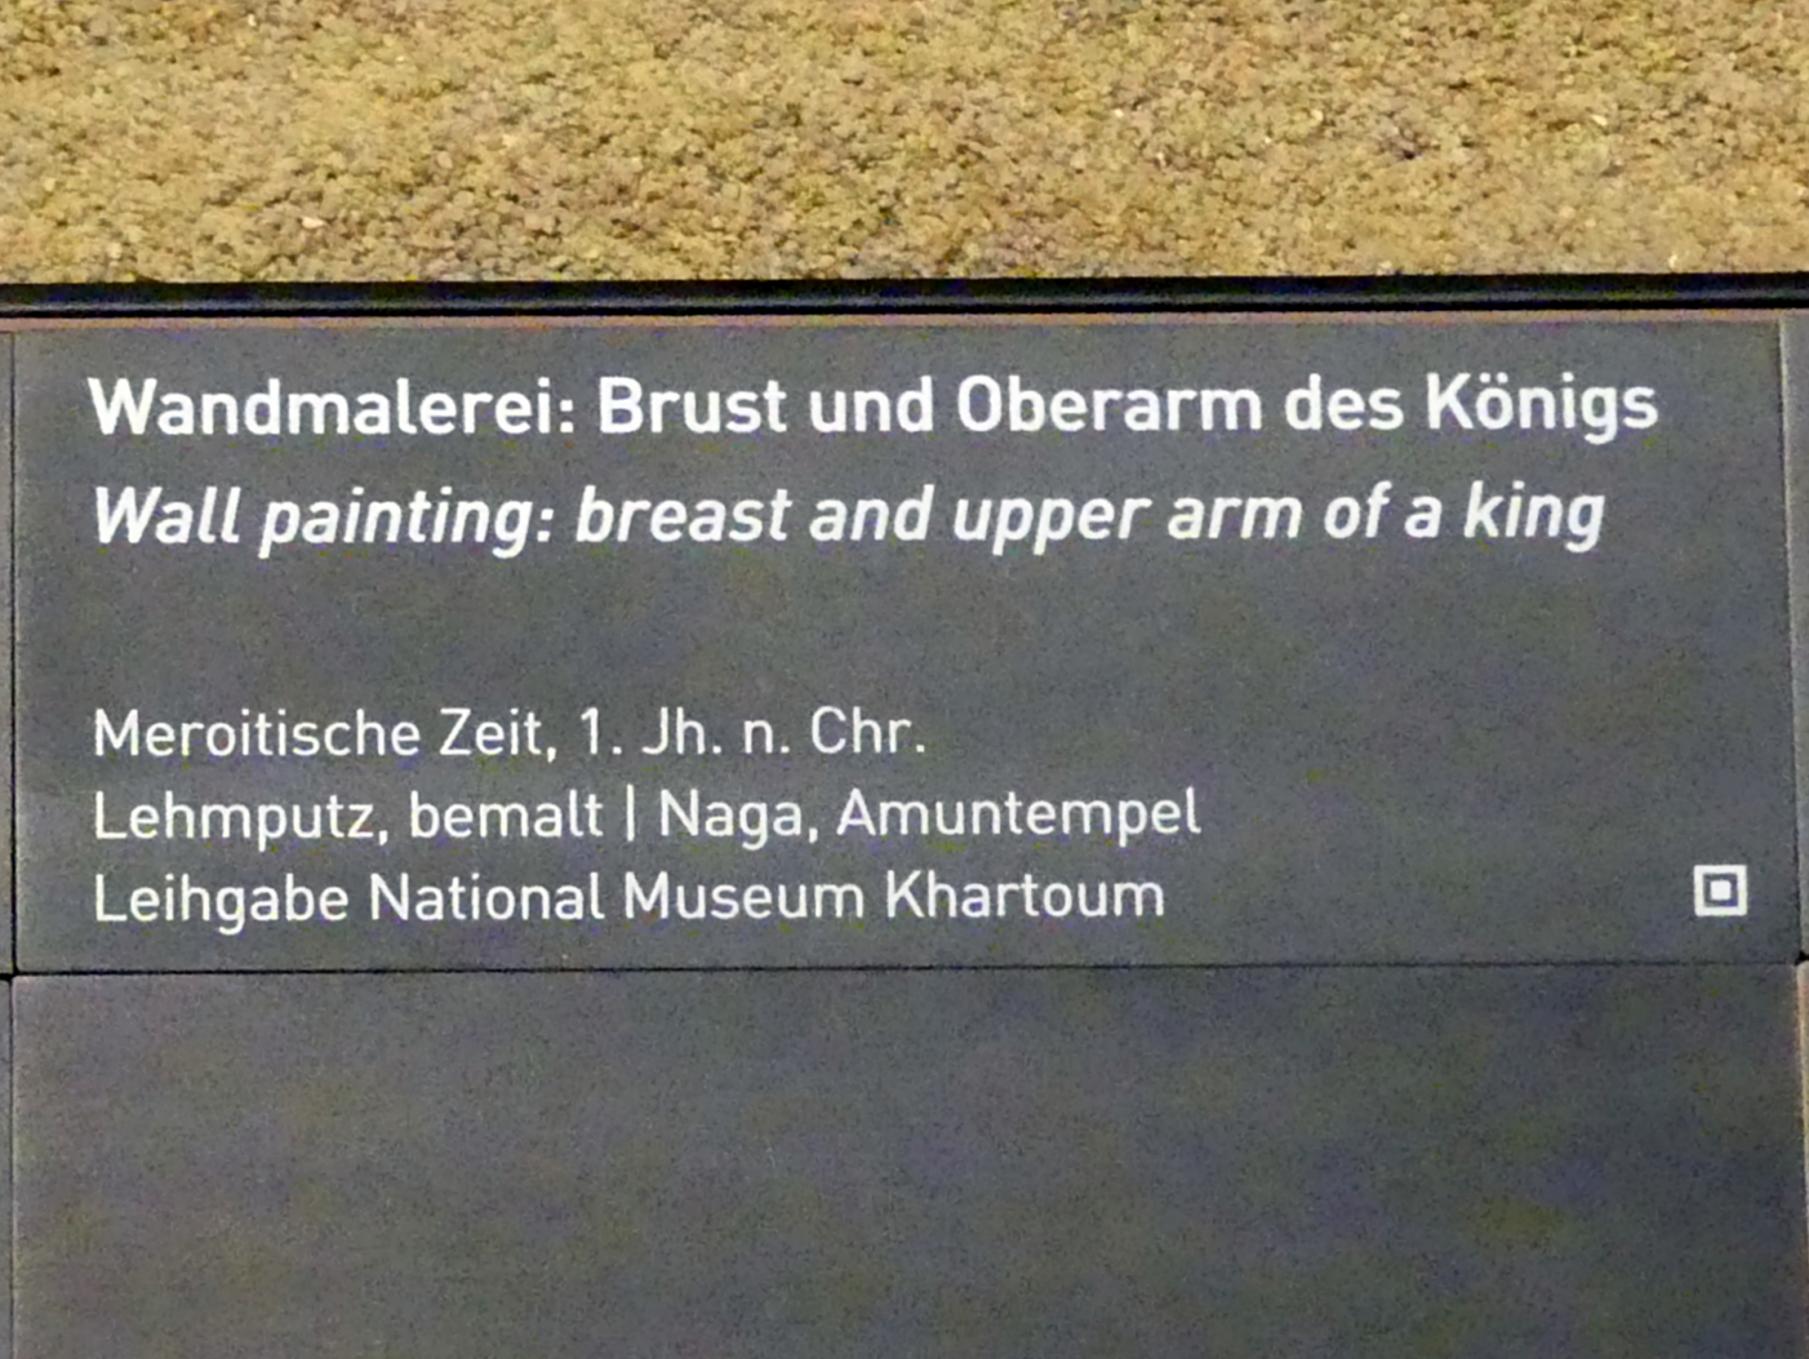 Wandmalerei: Brust und Oberarm des Königs, Meroitische Zeit, 200 v. Chr. - 500 n. Chr., 1 - 100, Bild 2/2